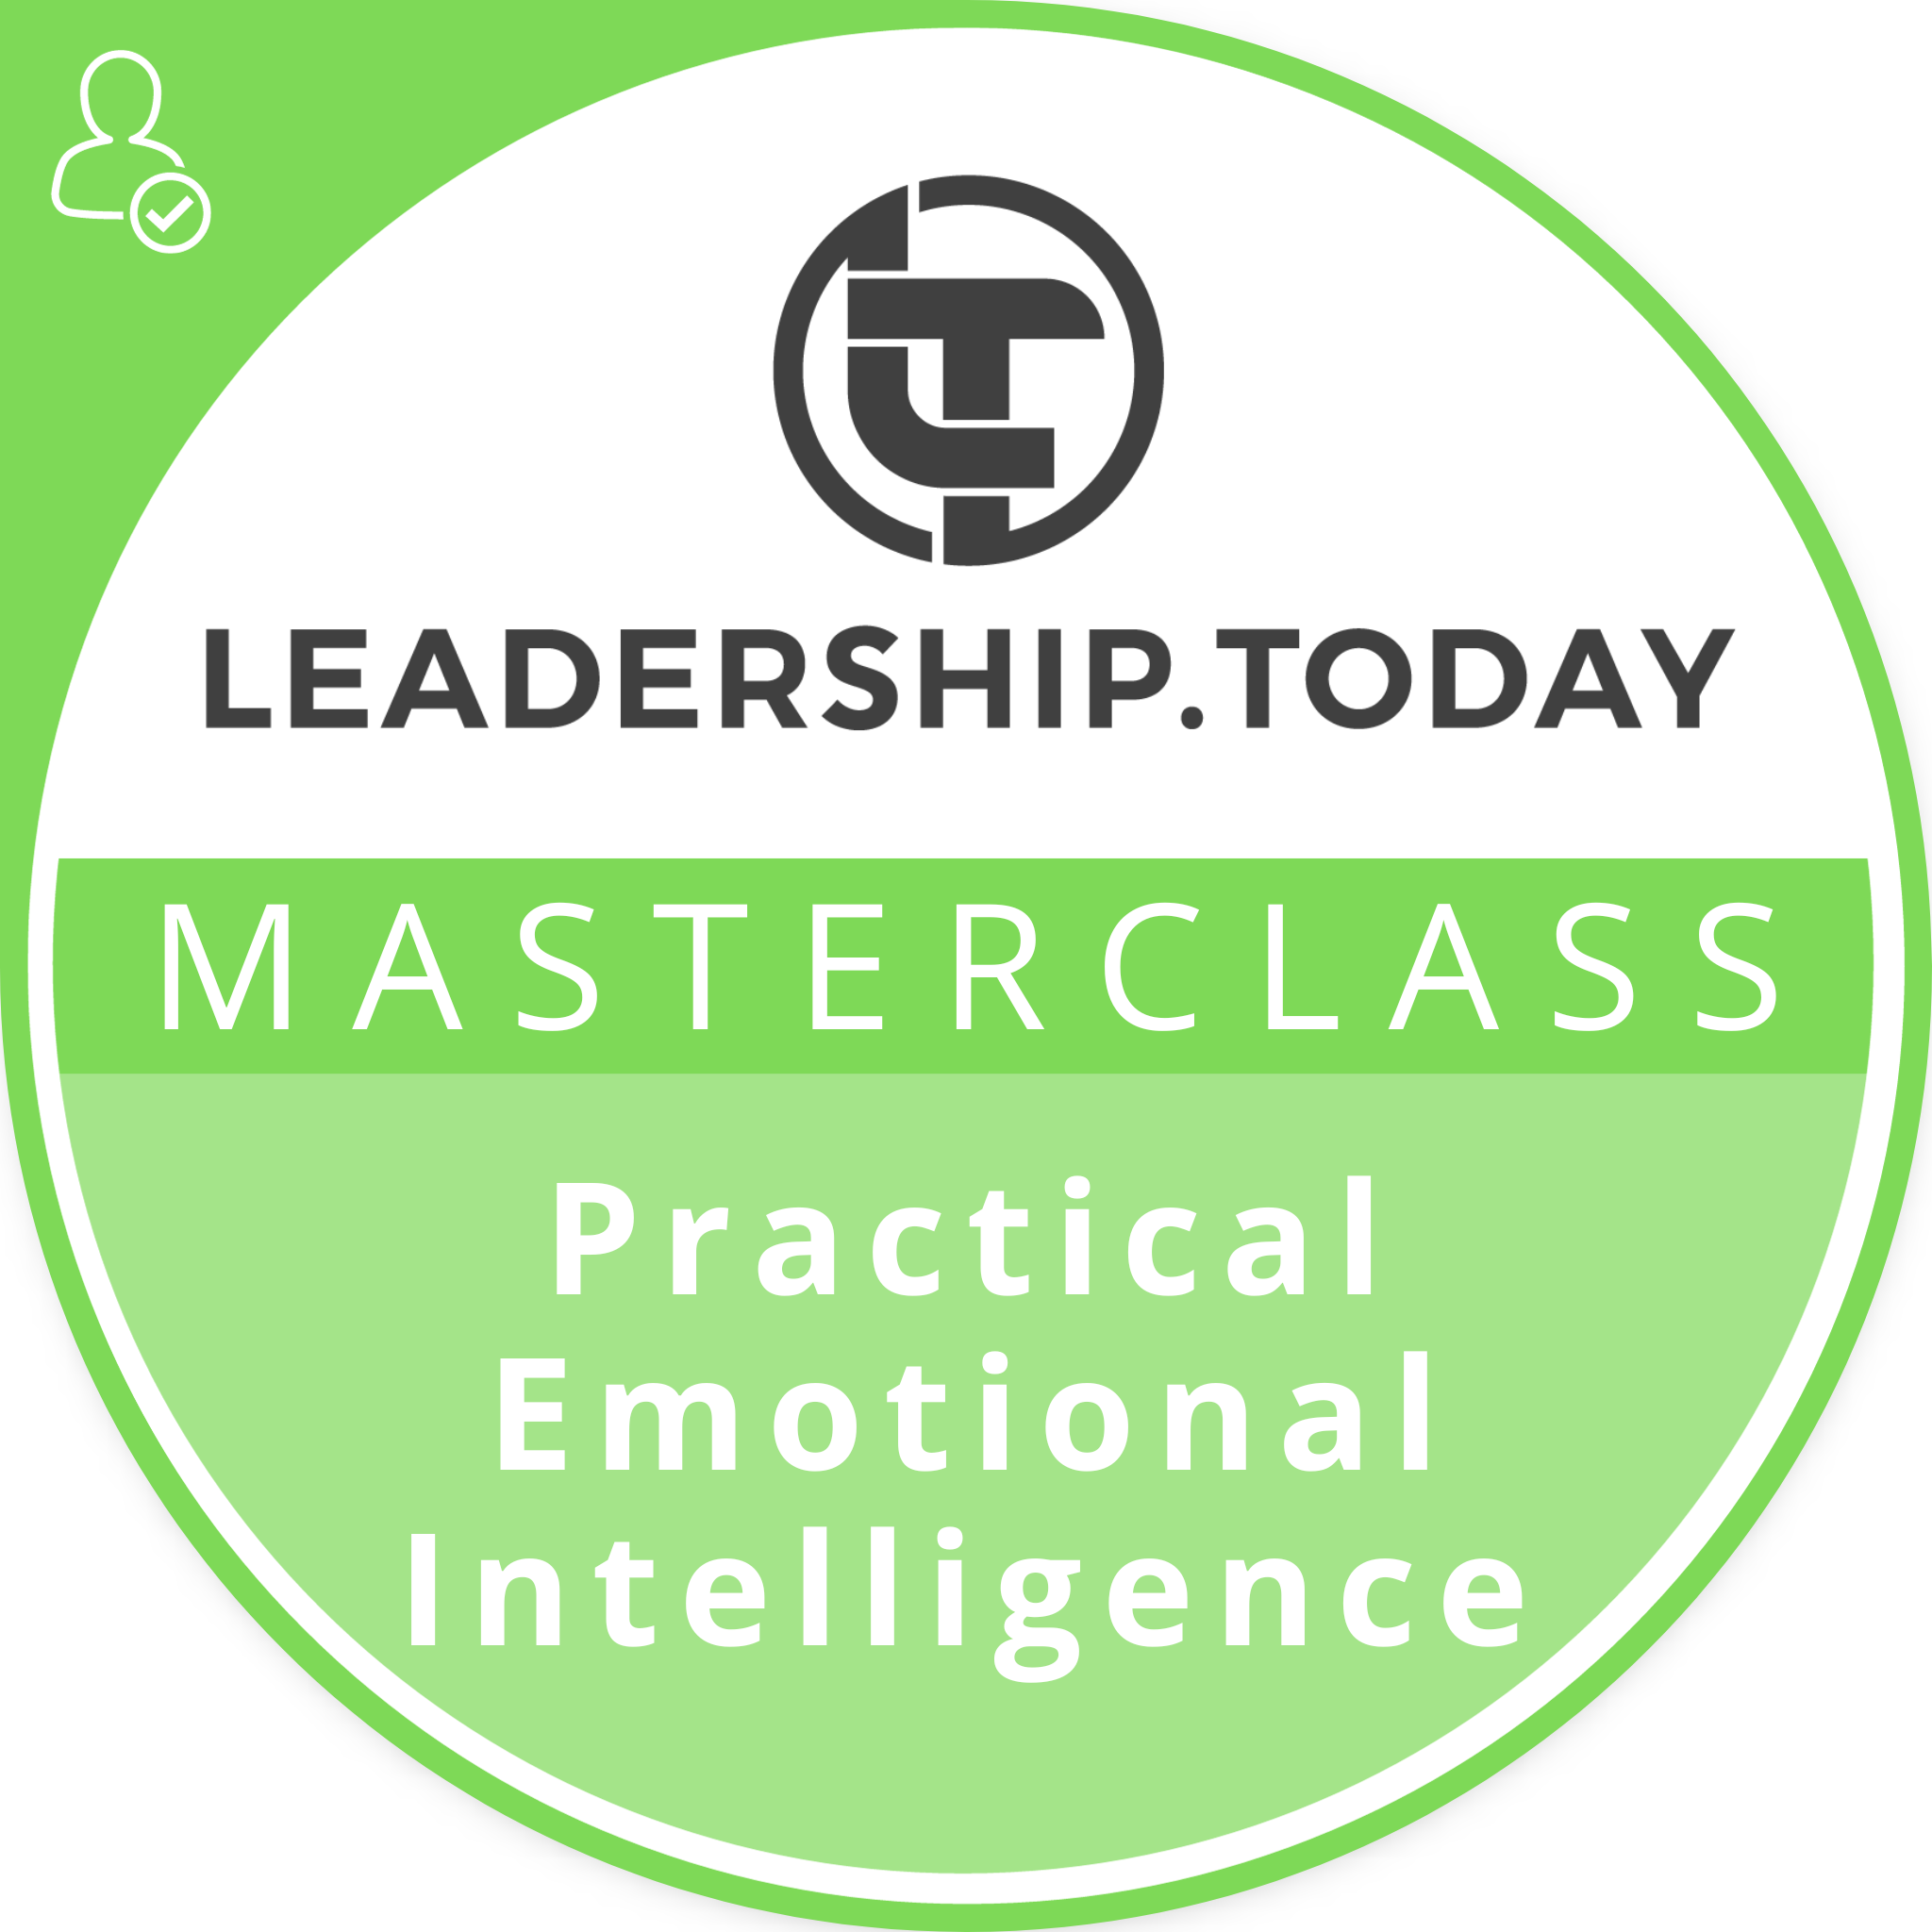 Practical Emotional Intelligence